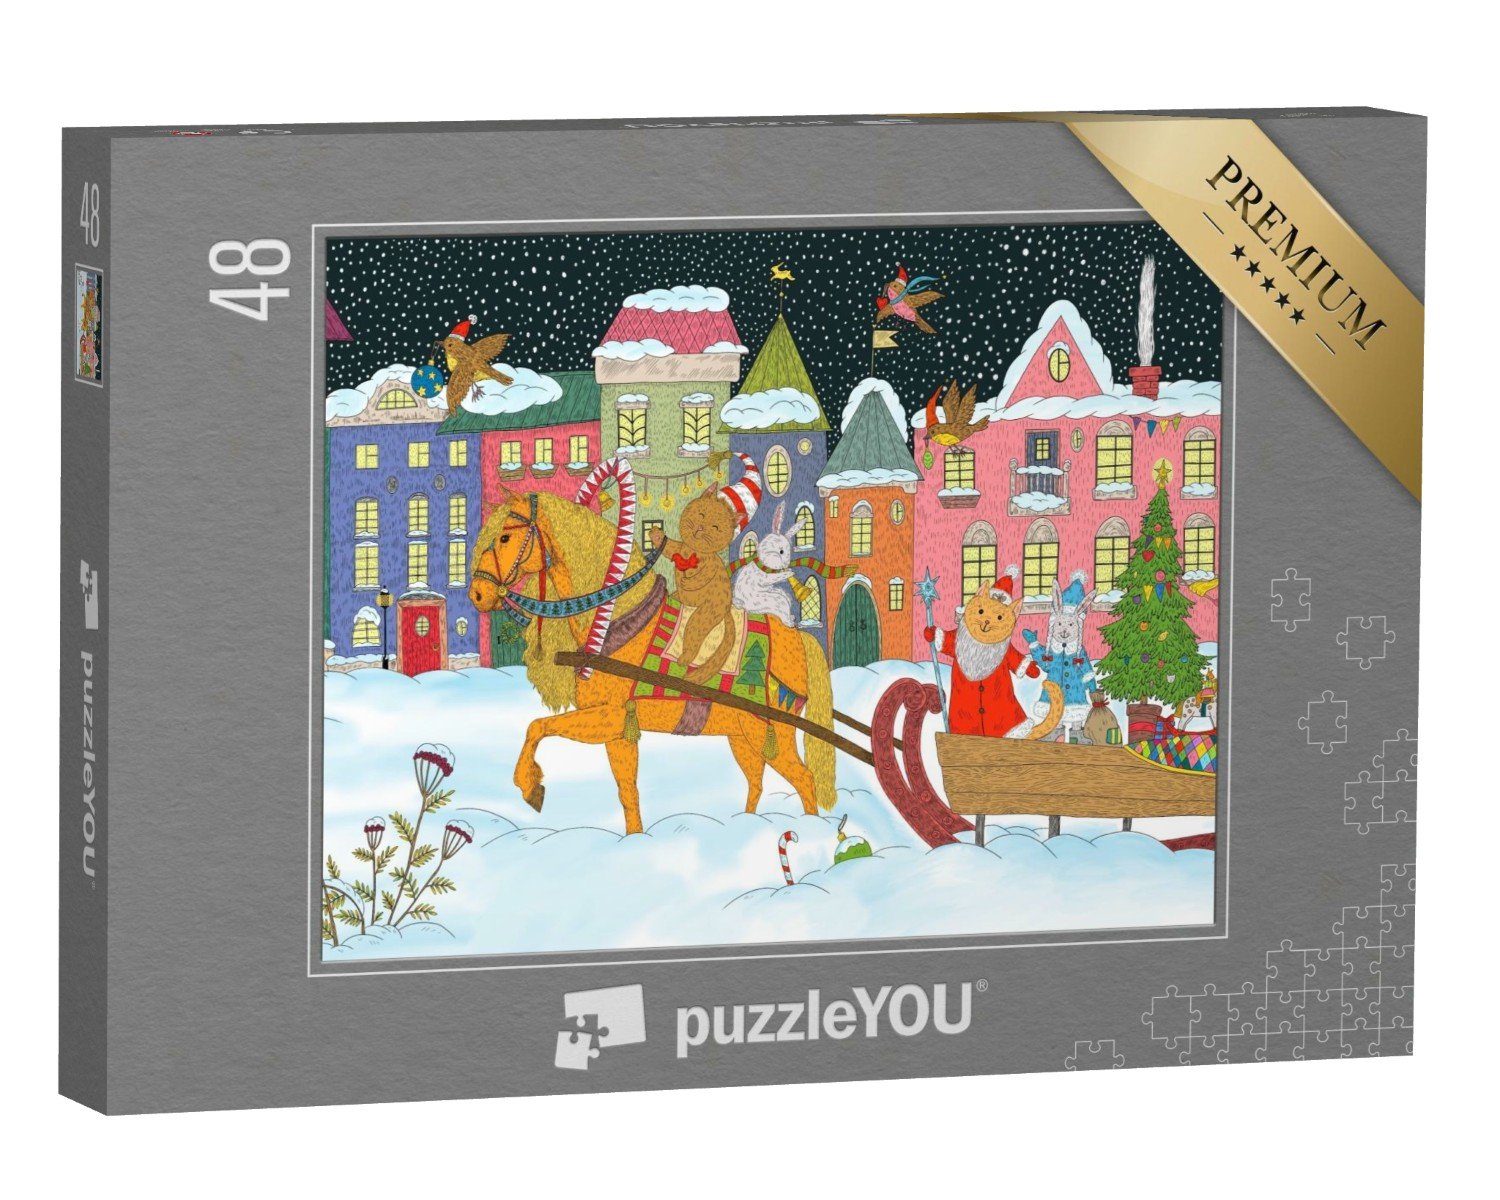 einem 48 Puzzle puzzleYOU Weihnachten Pferdeschlitten, und Puzzleteile, Weihnachtsmann auf Tiere puzzleYOU-Kollektionen